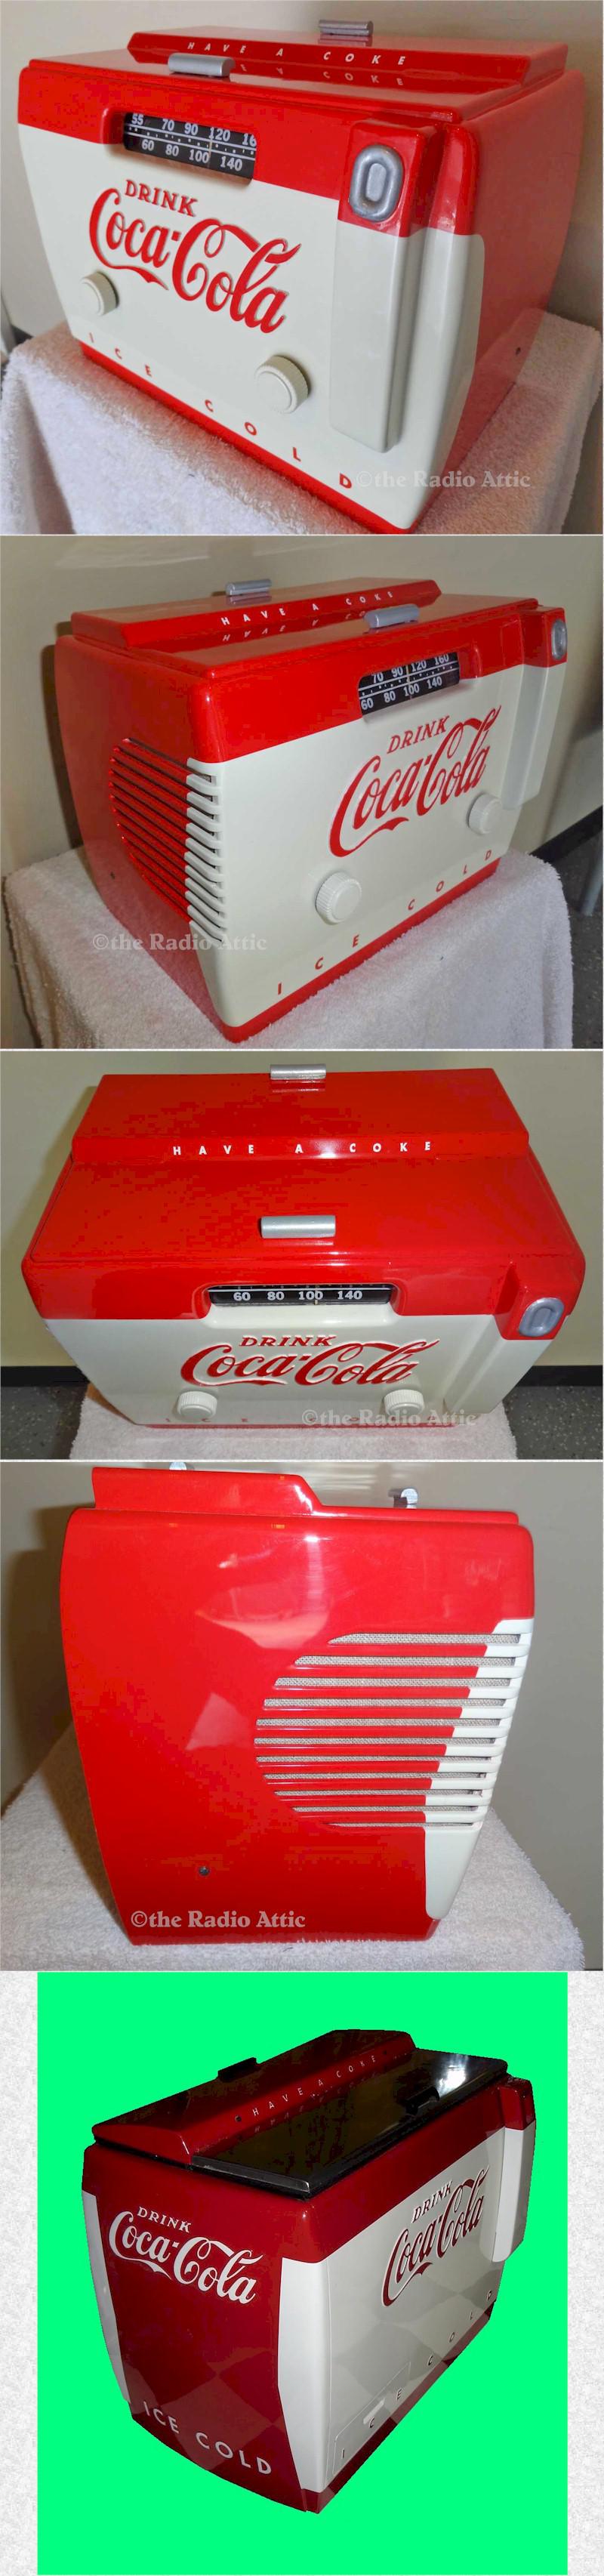 Coca-Cola Cooler Radio 5A410A (1949)